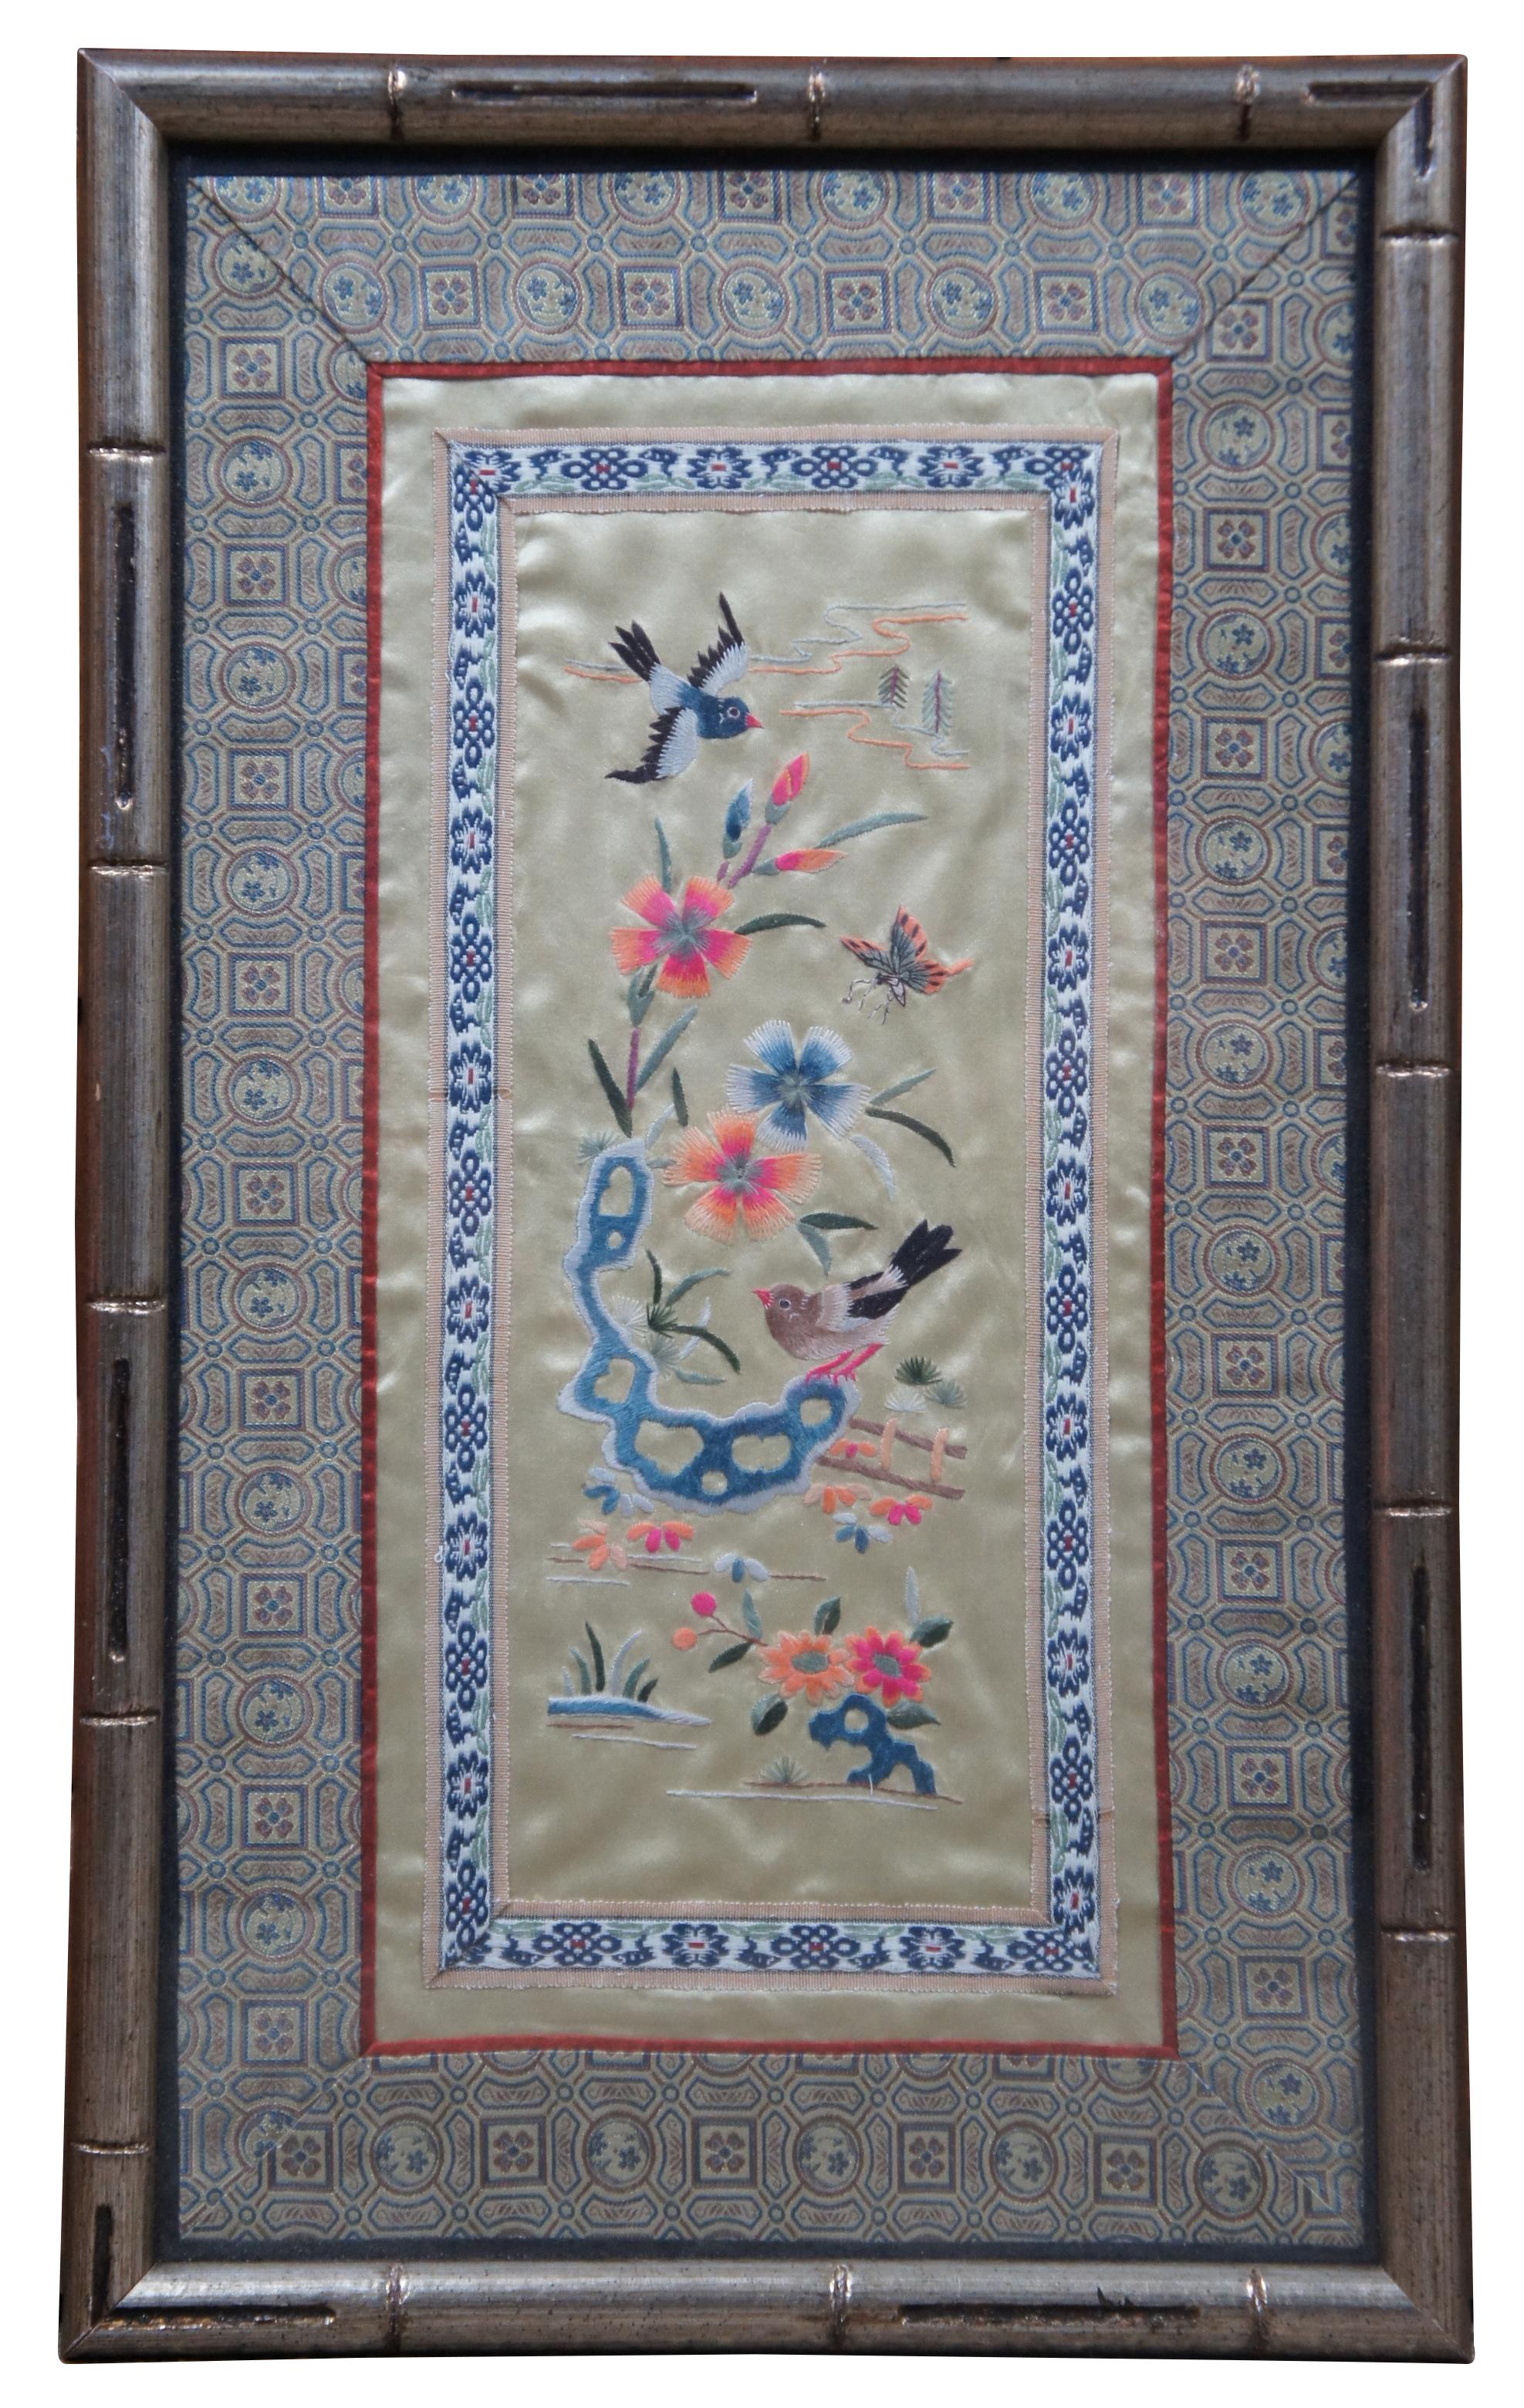 Paire de tapisseries chinoises encadrées, brodées à la main sur soie dorée, représentant des oiseaux, des fleurs, des bateaux nautiques et des pagodes/cottages.

Mesures : 11.25